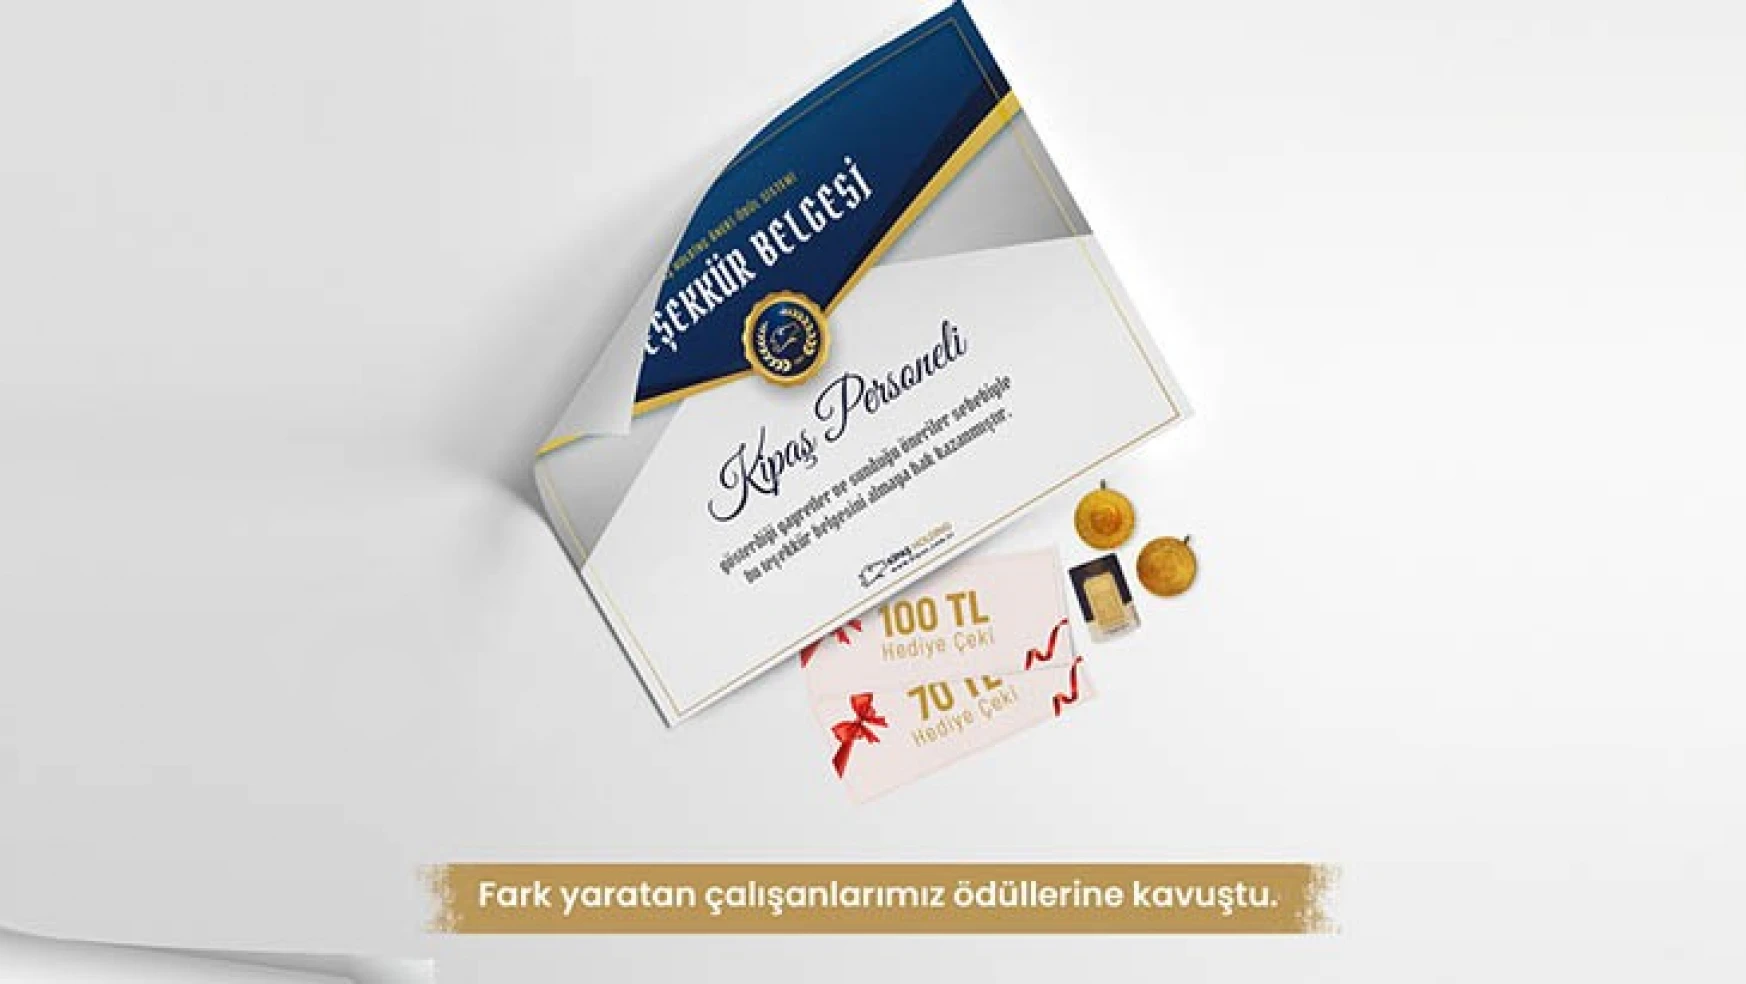 KİPAŞ Holding, Ar-Ge çalışanlarını ödüllendirdi